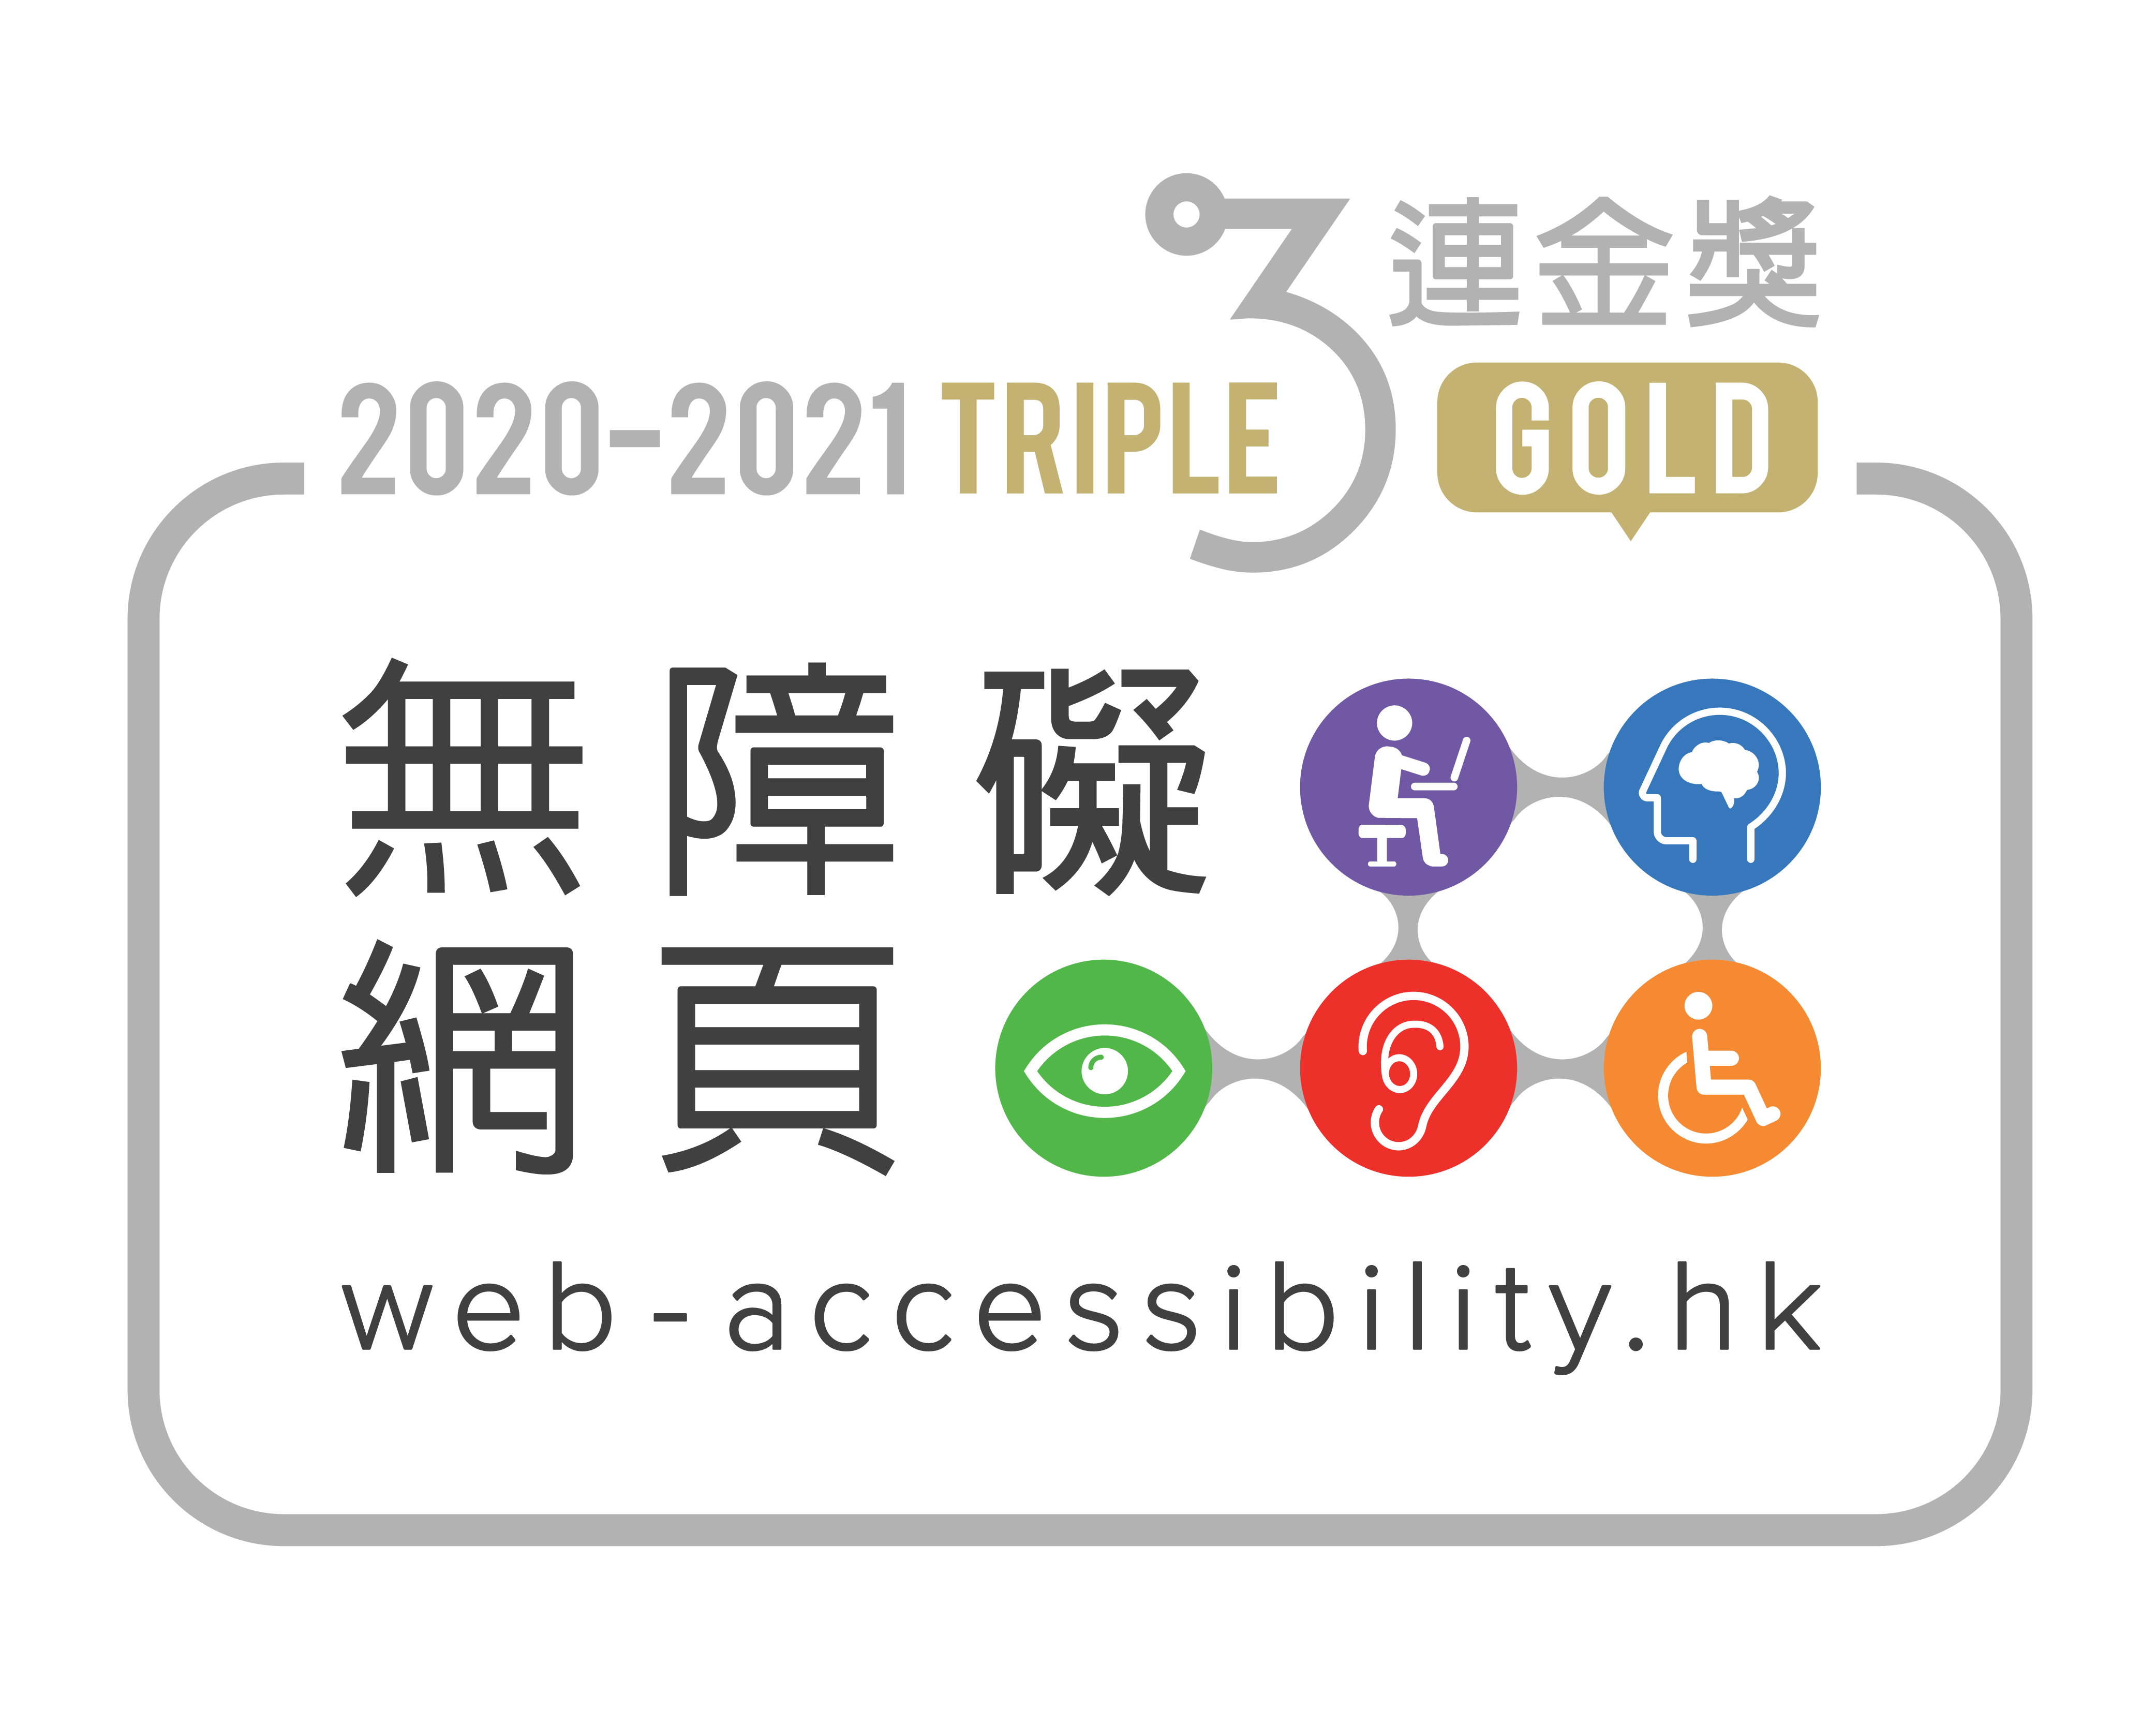 會展中心網頁在香港互聯網註冊管理有限公司（HKIRC）主辦的「無障礙網頁嘉許計劃」2020-2021中，獲頒發「網站組別」三連金獎